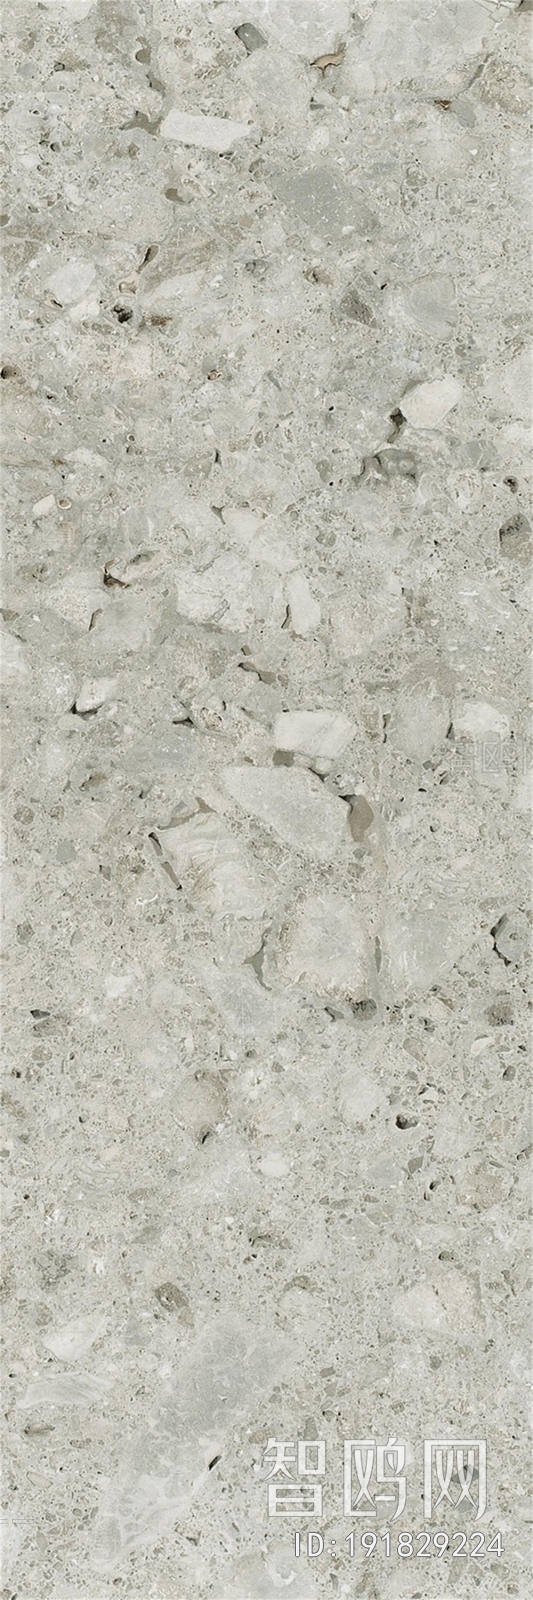 灰色水磨石瓷砖